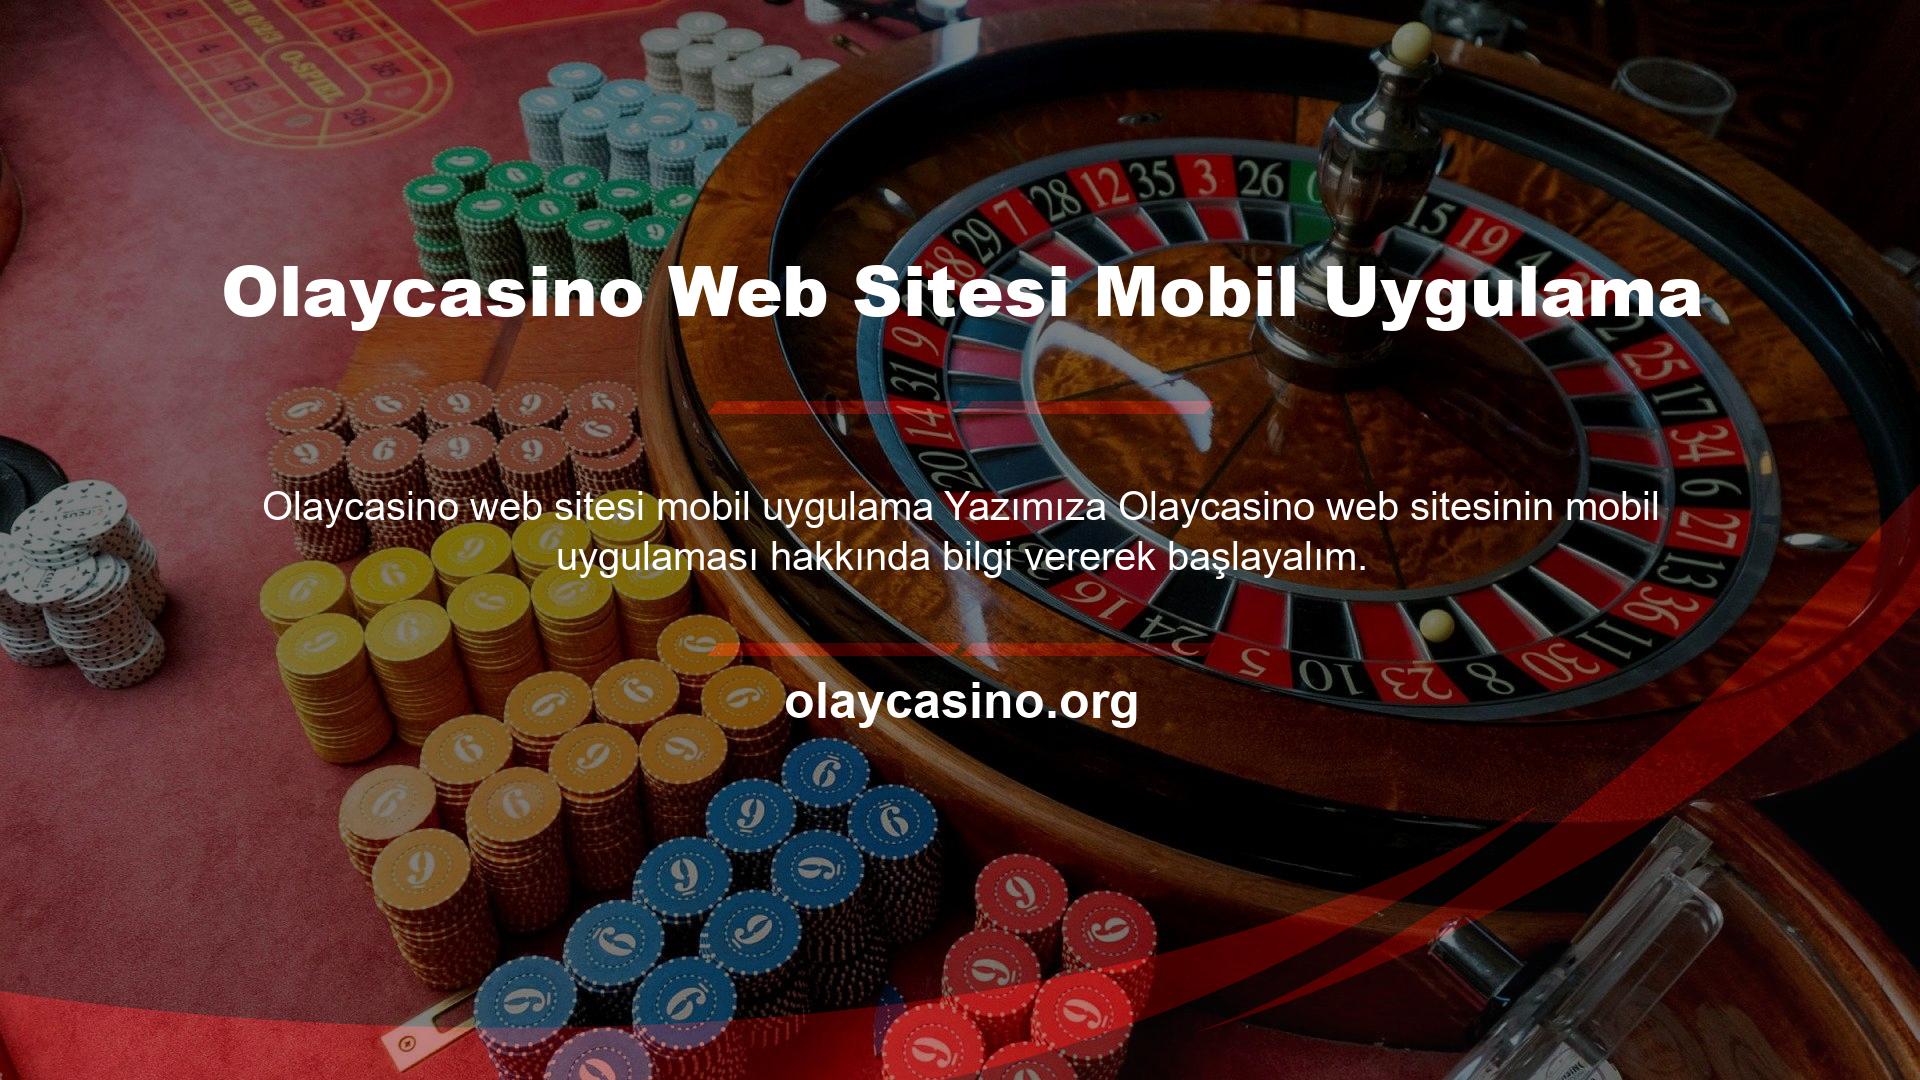 Olaycasino web sitesini mobil cihaz olarak kullanmak için seçeneklerden biri de mobil uygulamadır